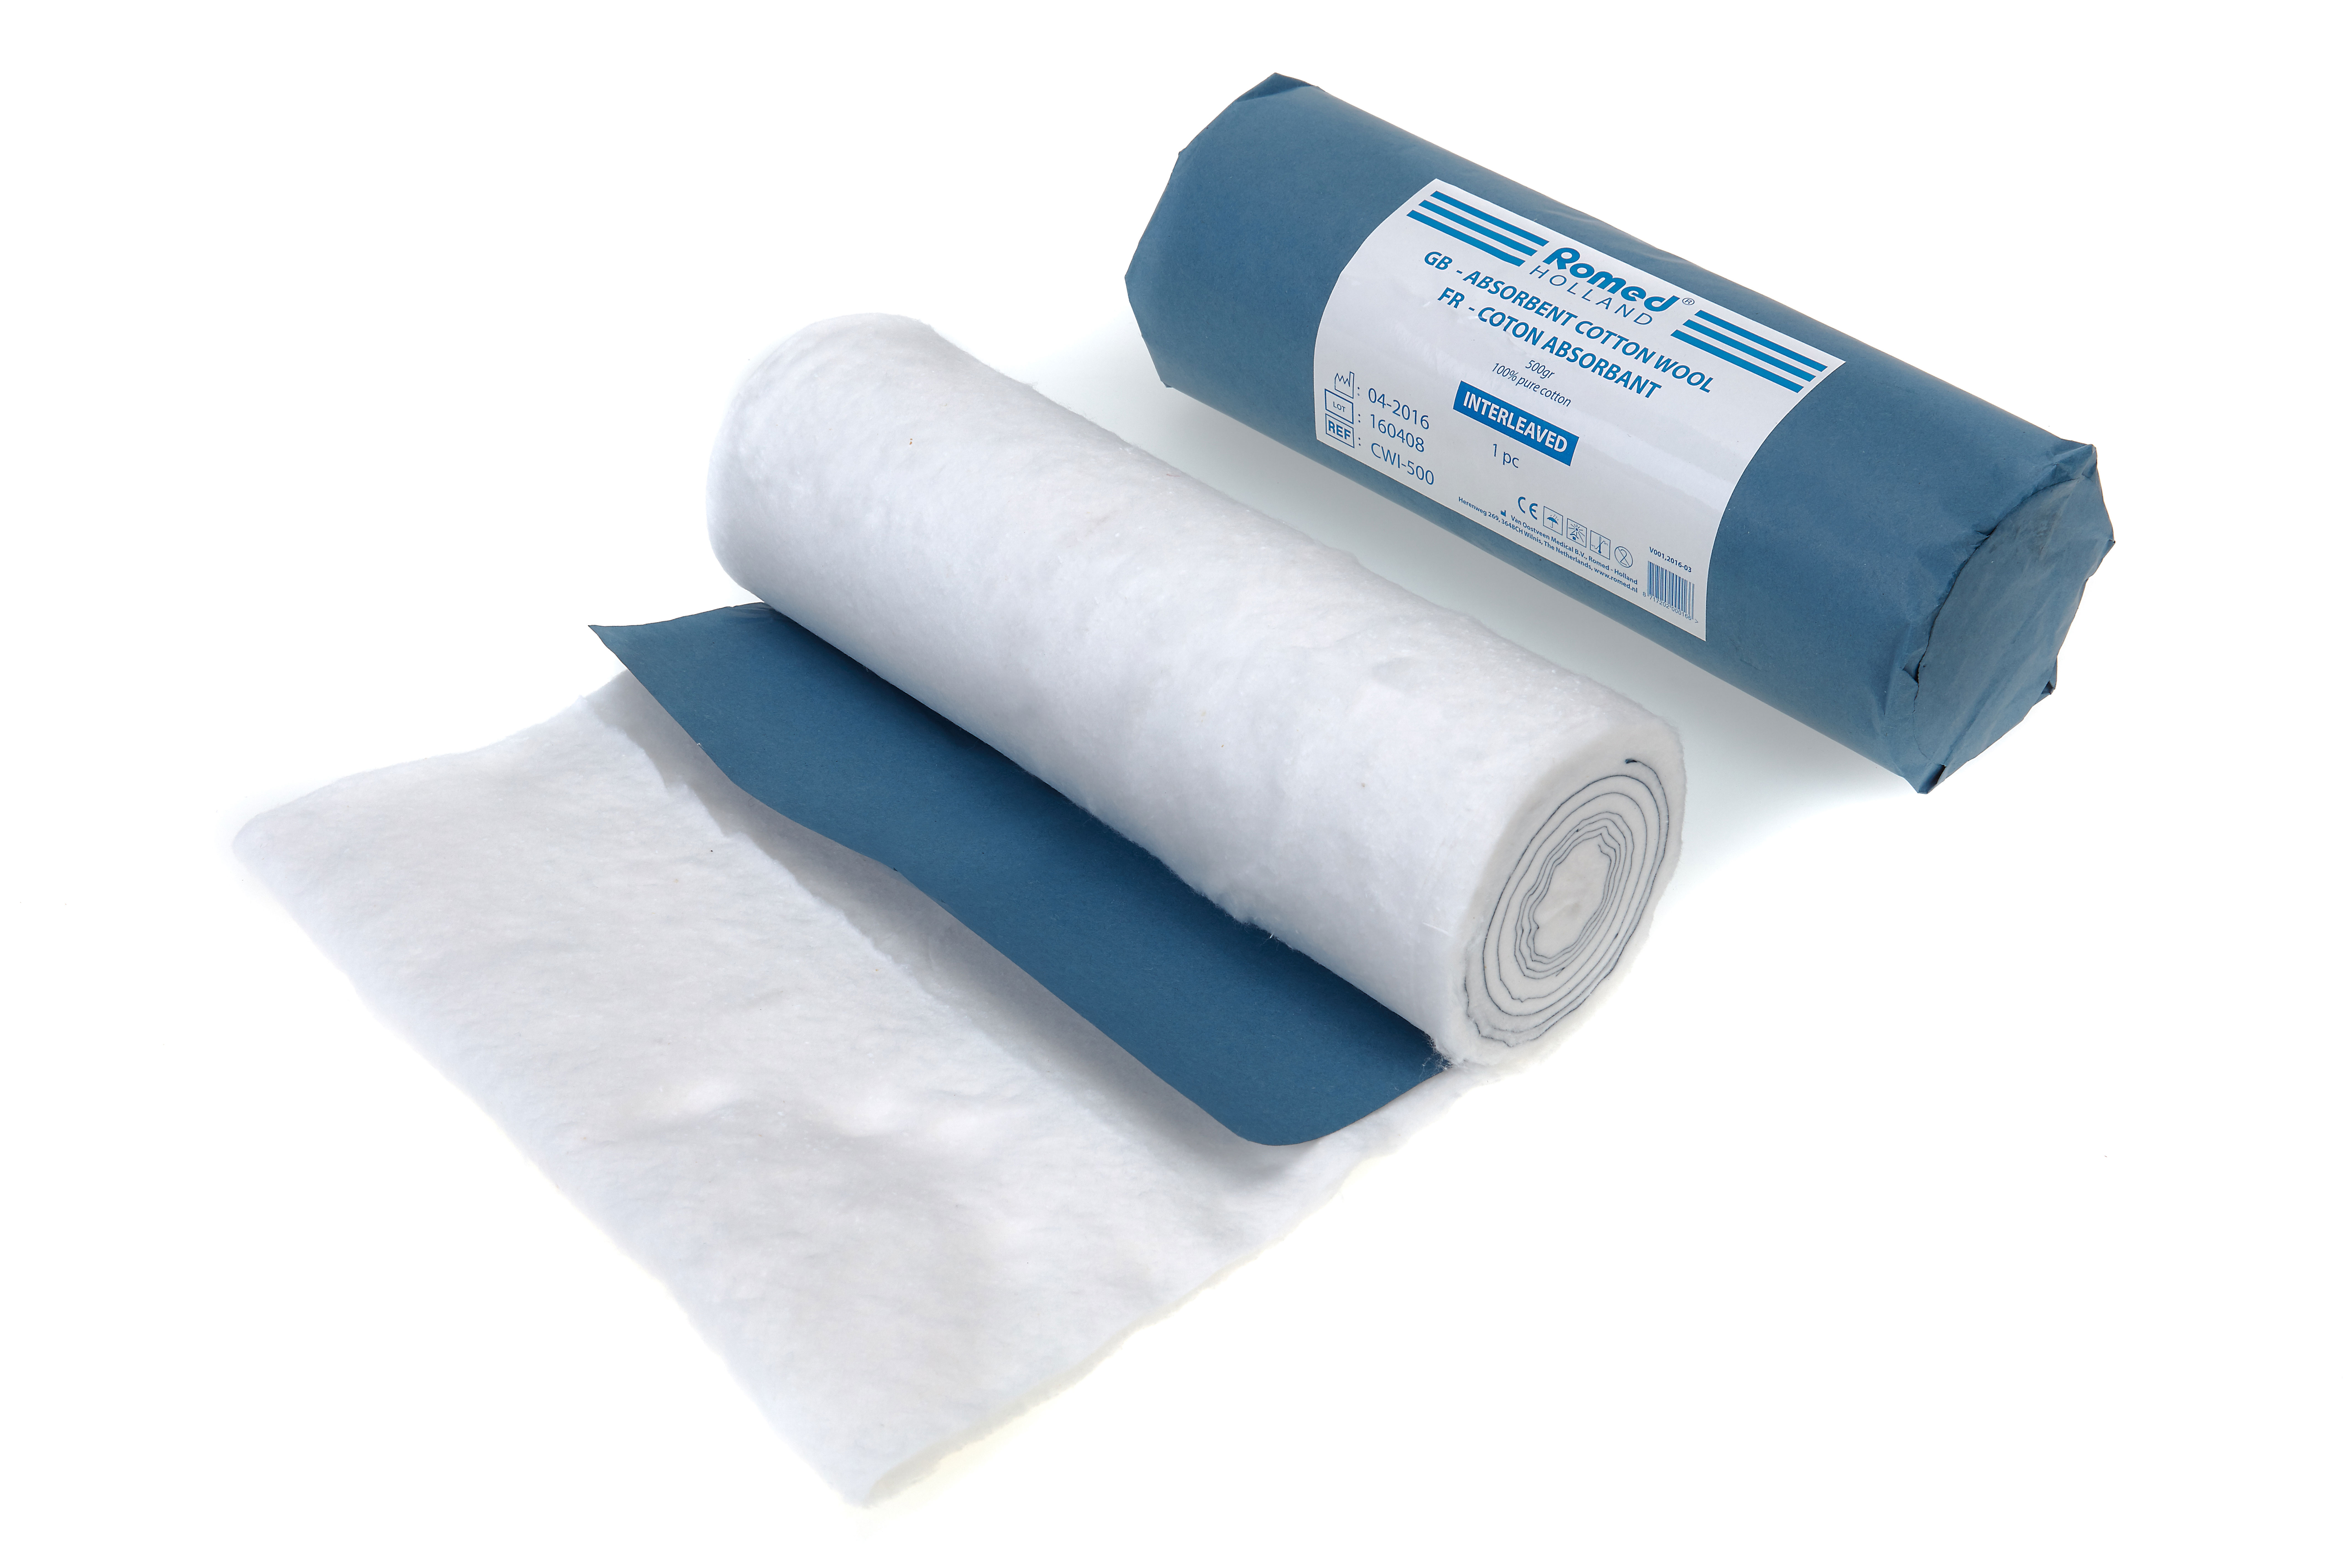 CWI-500 Algodón hidrófilo absorbente, 500 g, desengrasado y blanqueado, intercalado, con papel azul: corte final, 100 % algodón puro, por unidad, 30 rollos en una caja de cartón.